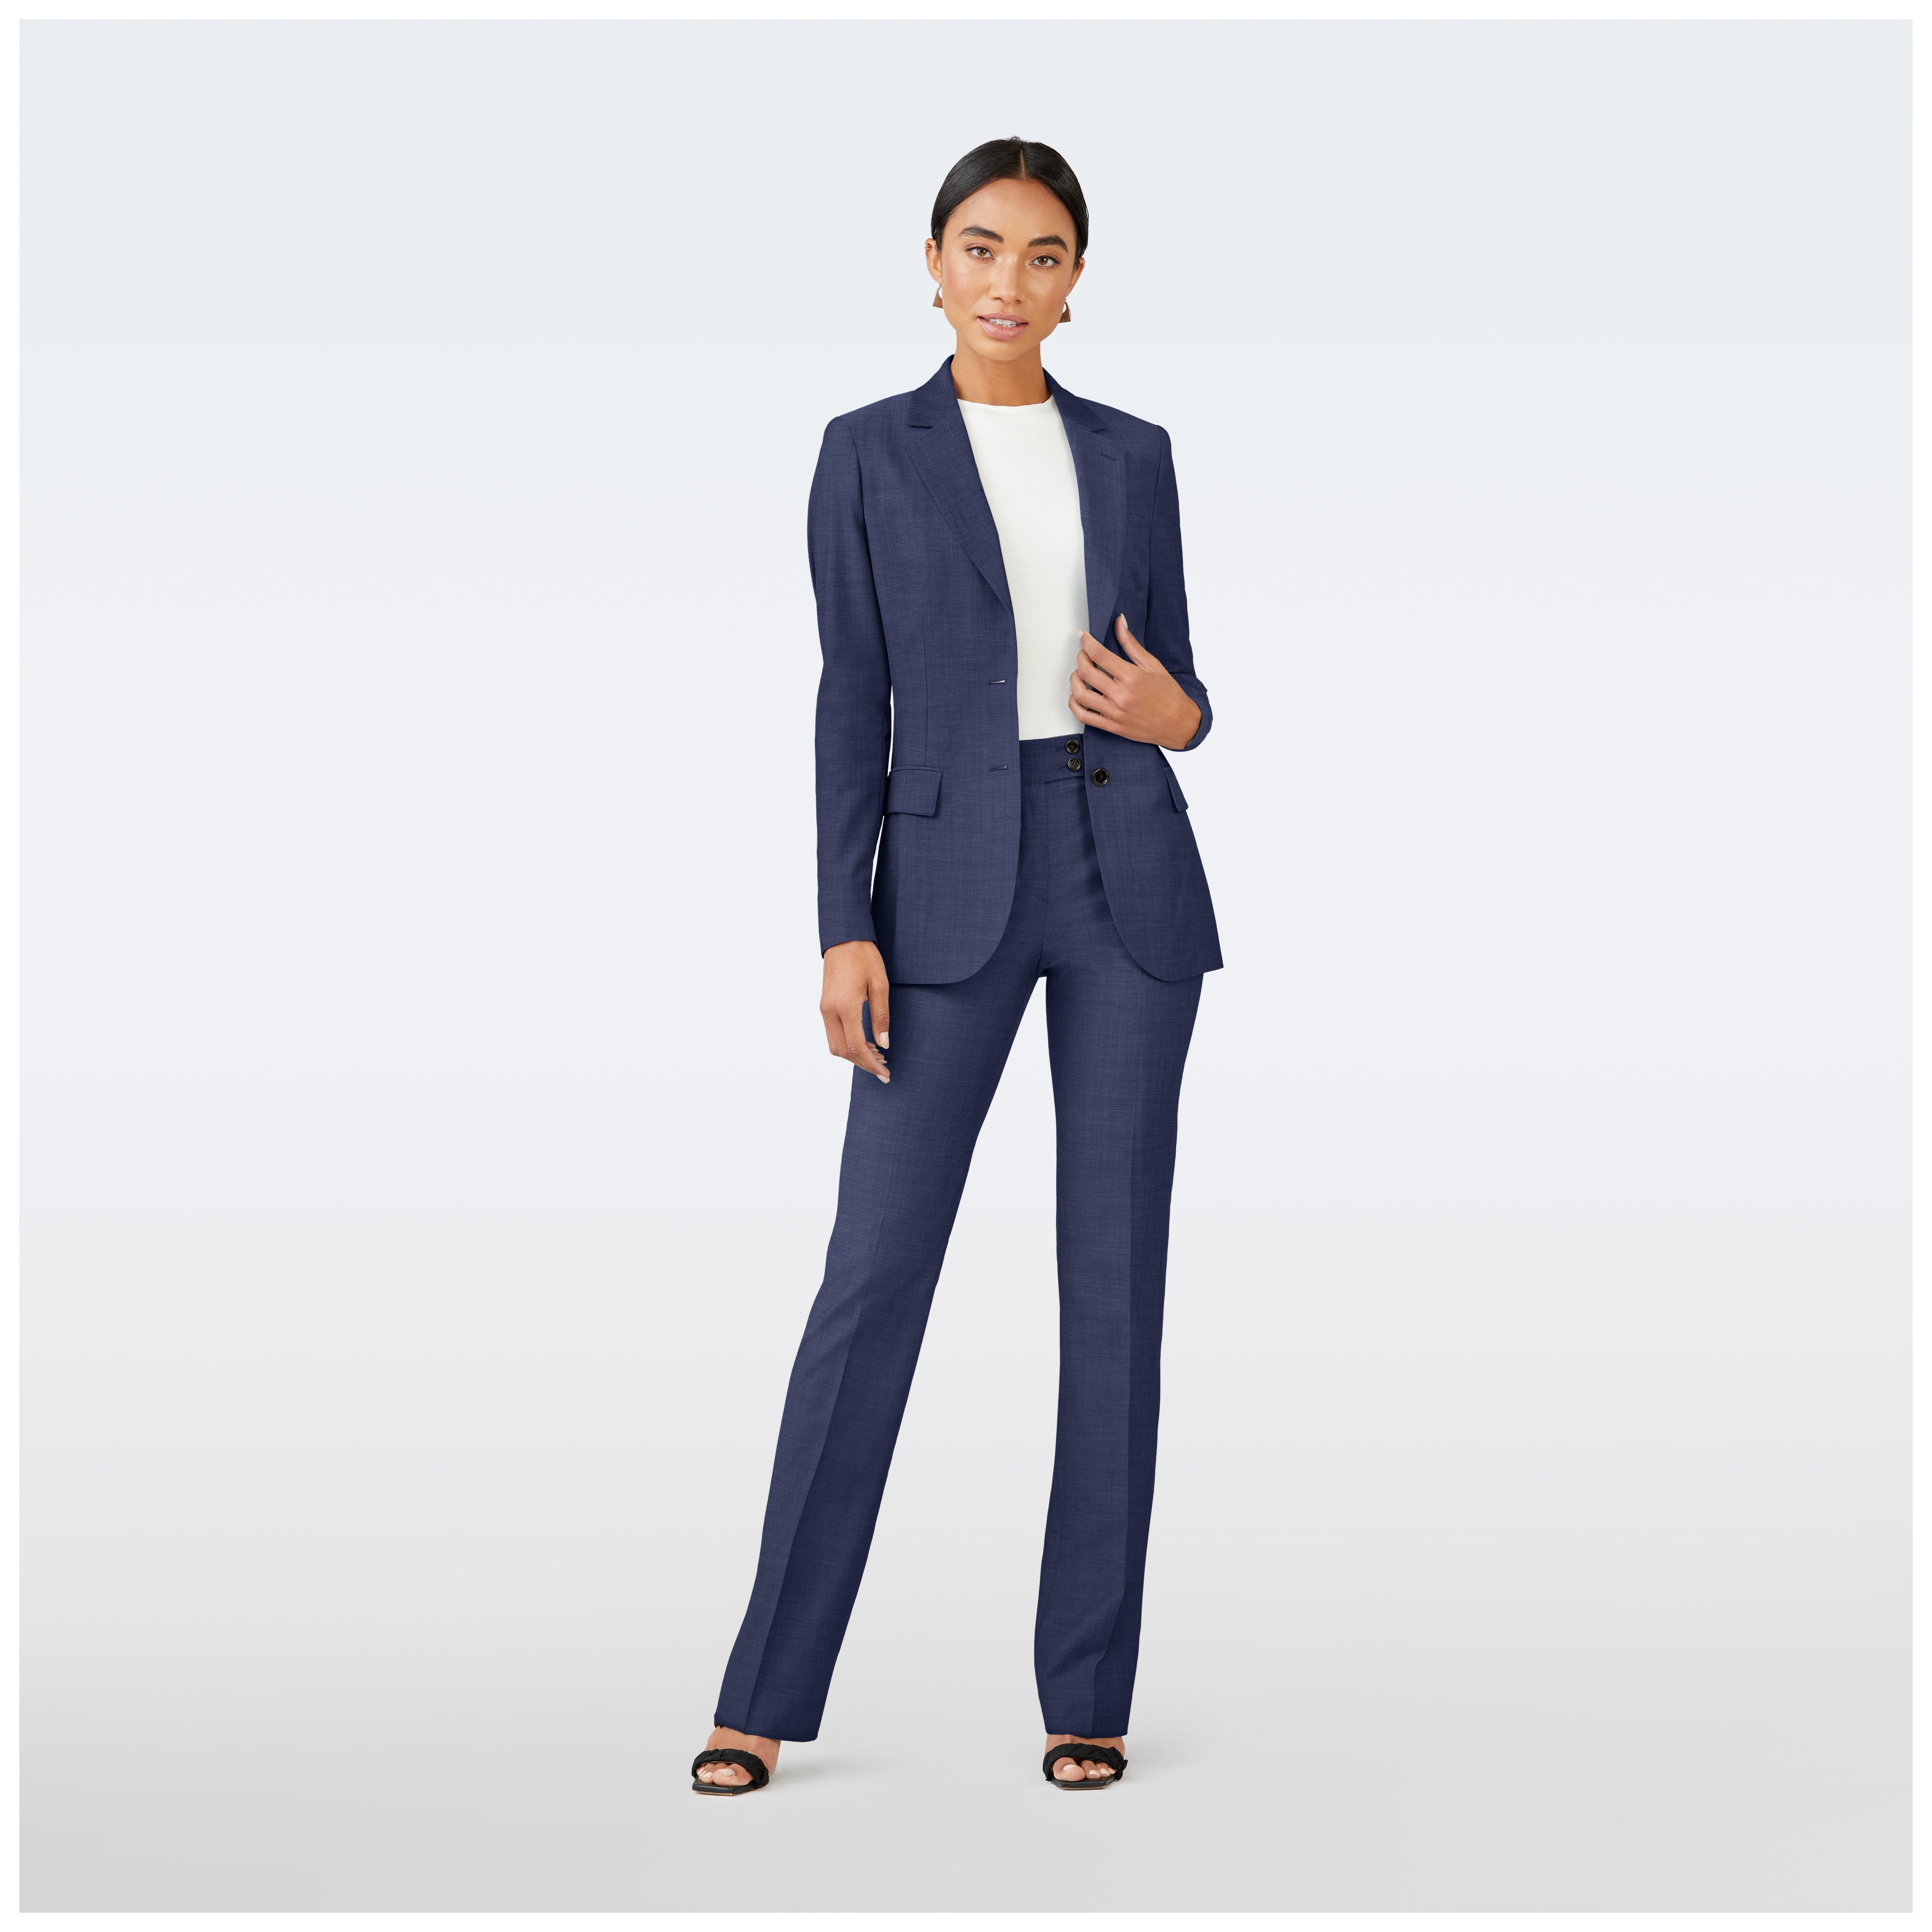 Women's Blue Suits & Suit Separates